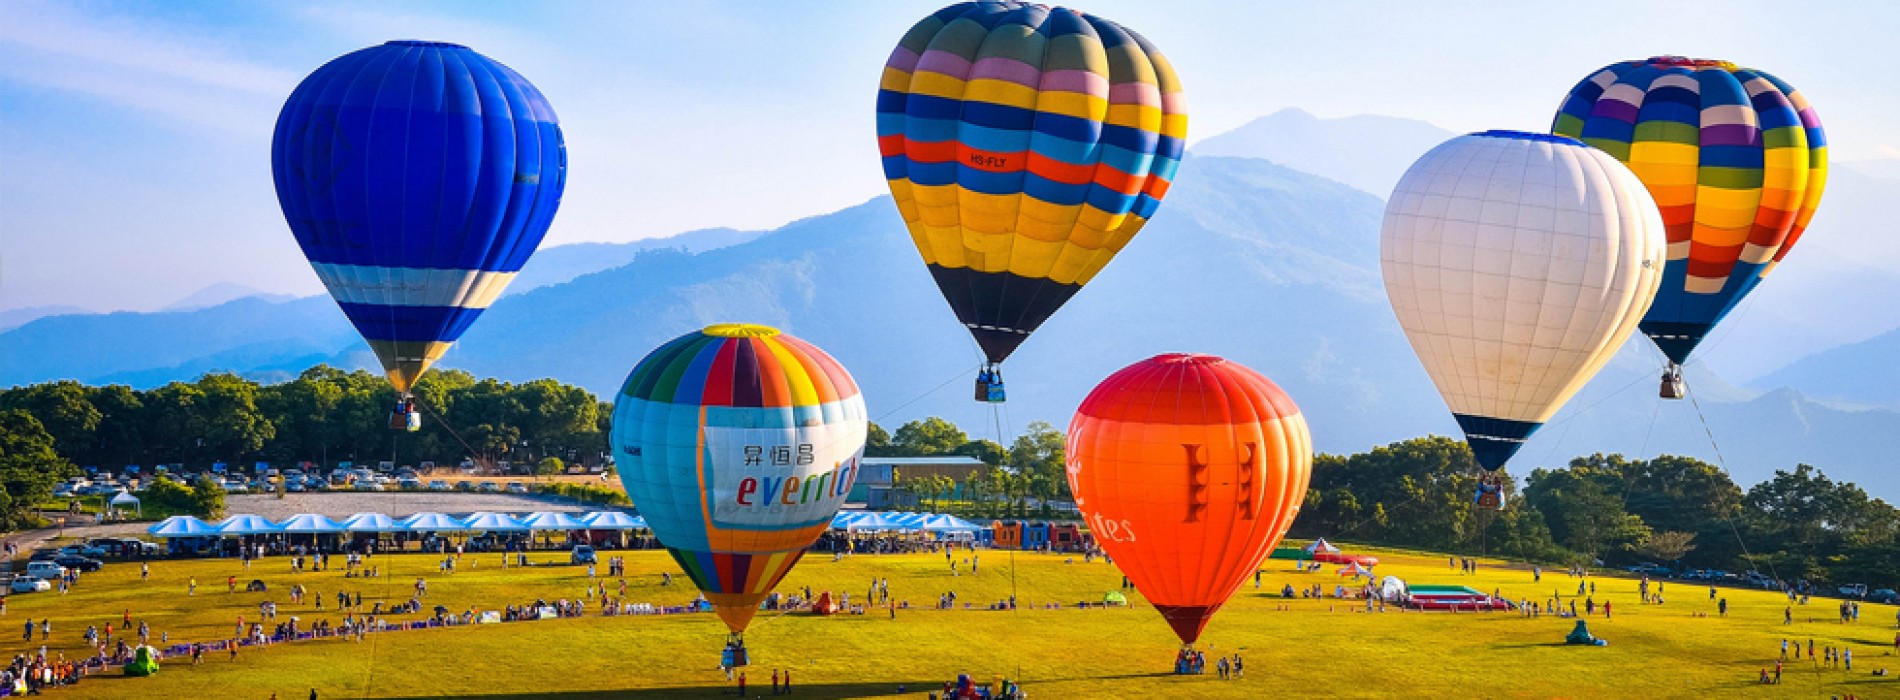 Visit the Taiwan Hot Air Balloon Festival